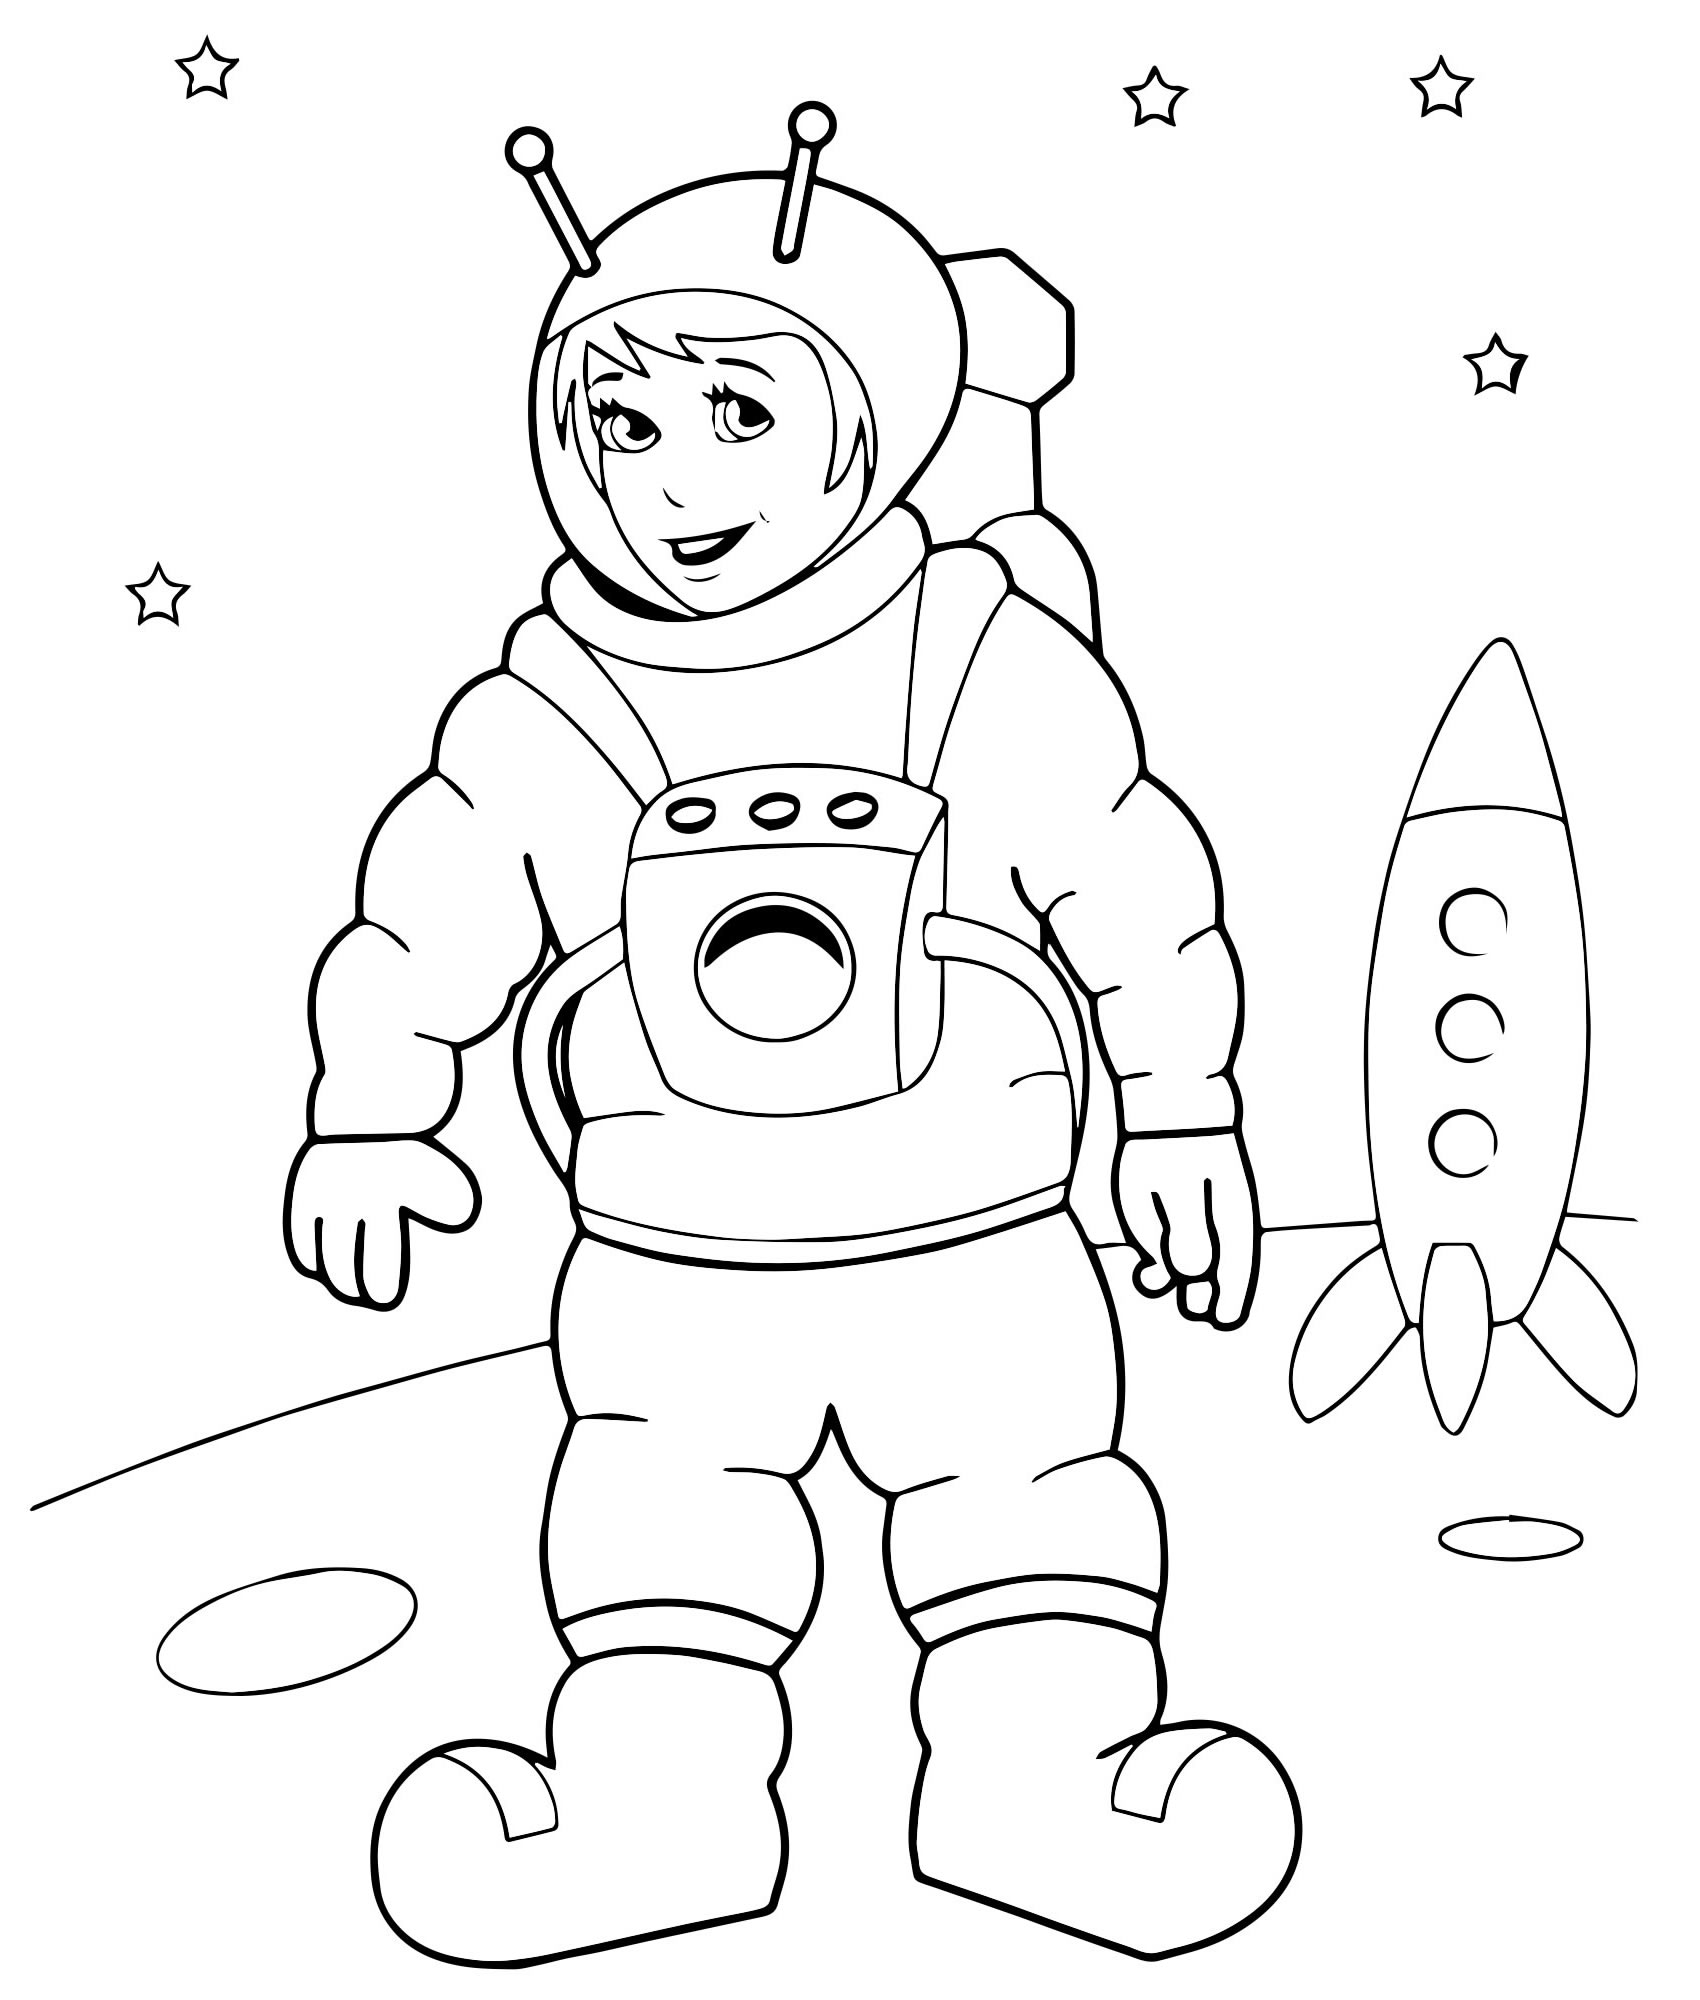 Космос раскраска для детей 3 4 лет. Космонавт раскраска для детей. Космос раскраска для детей. Космонавтика раскраски для детей. Раскраска. В космосе.